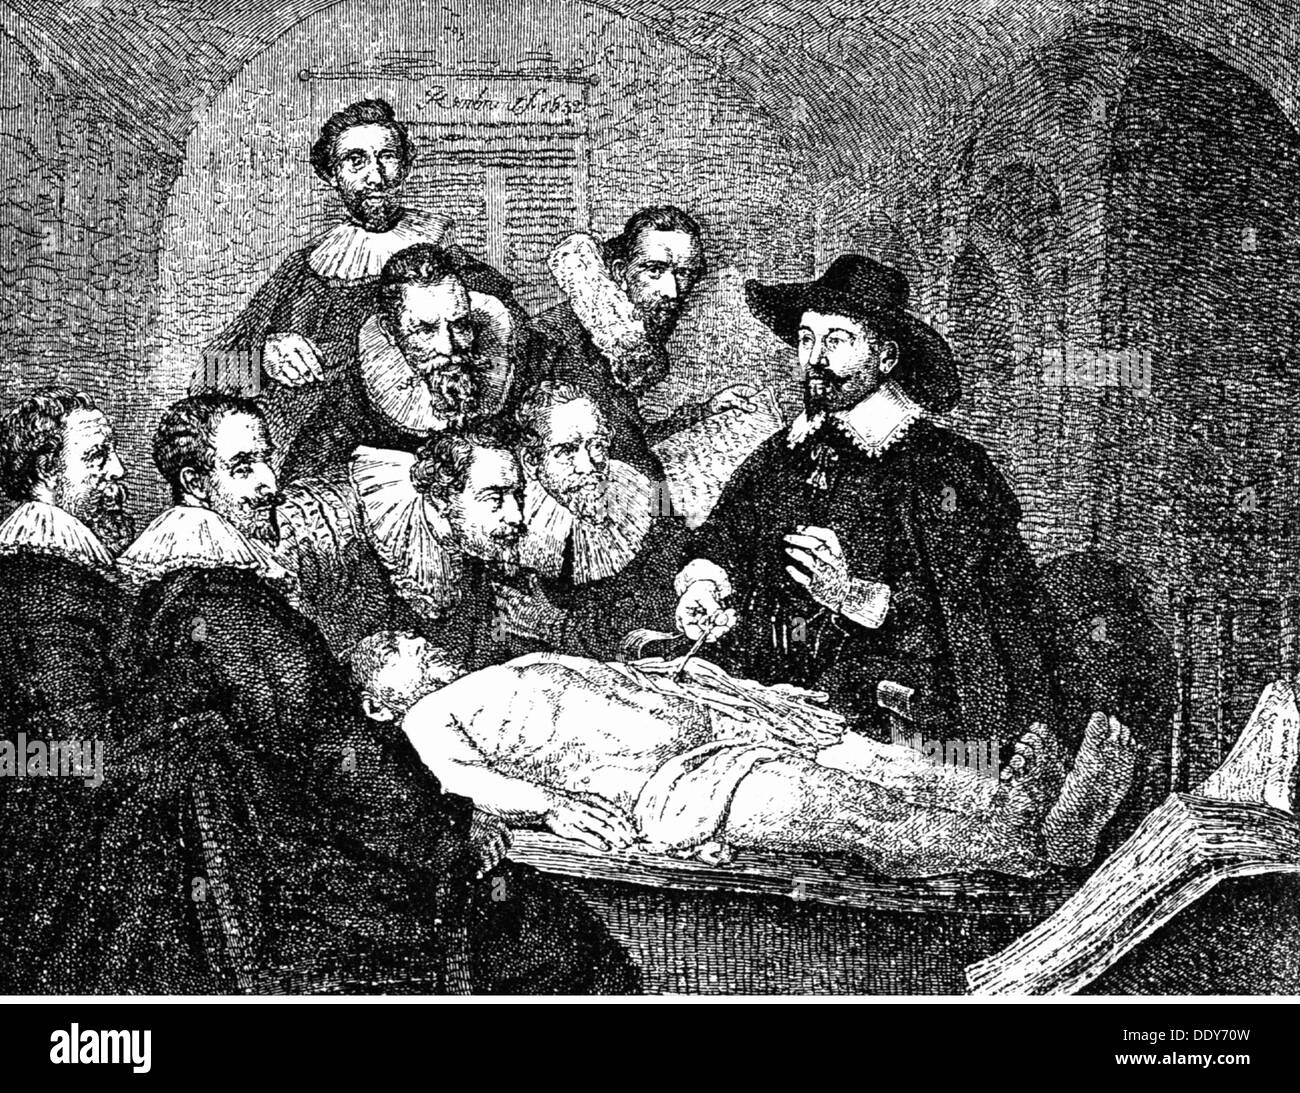 Medicina, anatomia, dissezione / autopsia, dopo la pittura 'la lezione di anatomia del Dr. Nicolaes Tulp' di Rembrandt van Rijn (1606 - 1669), 1632, incisione del legno, diritti aggiuntivi-clearences-non disponibile Foto Stock